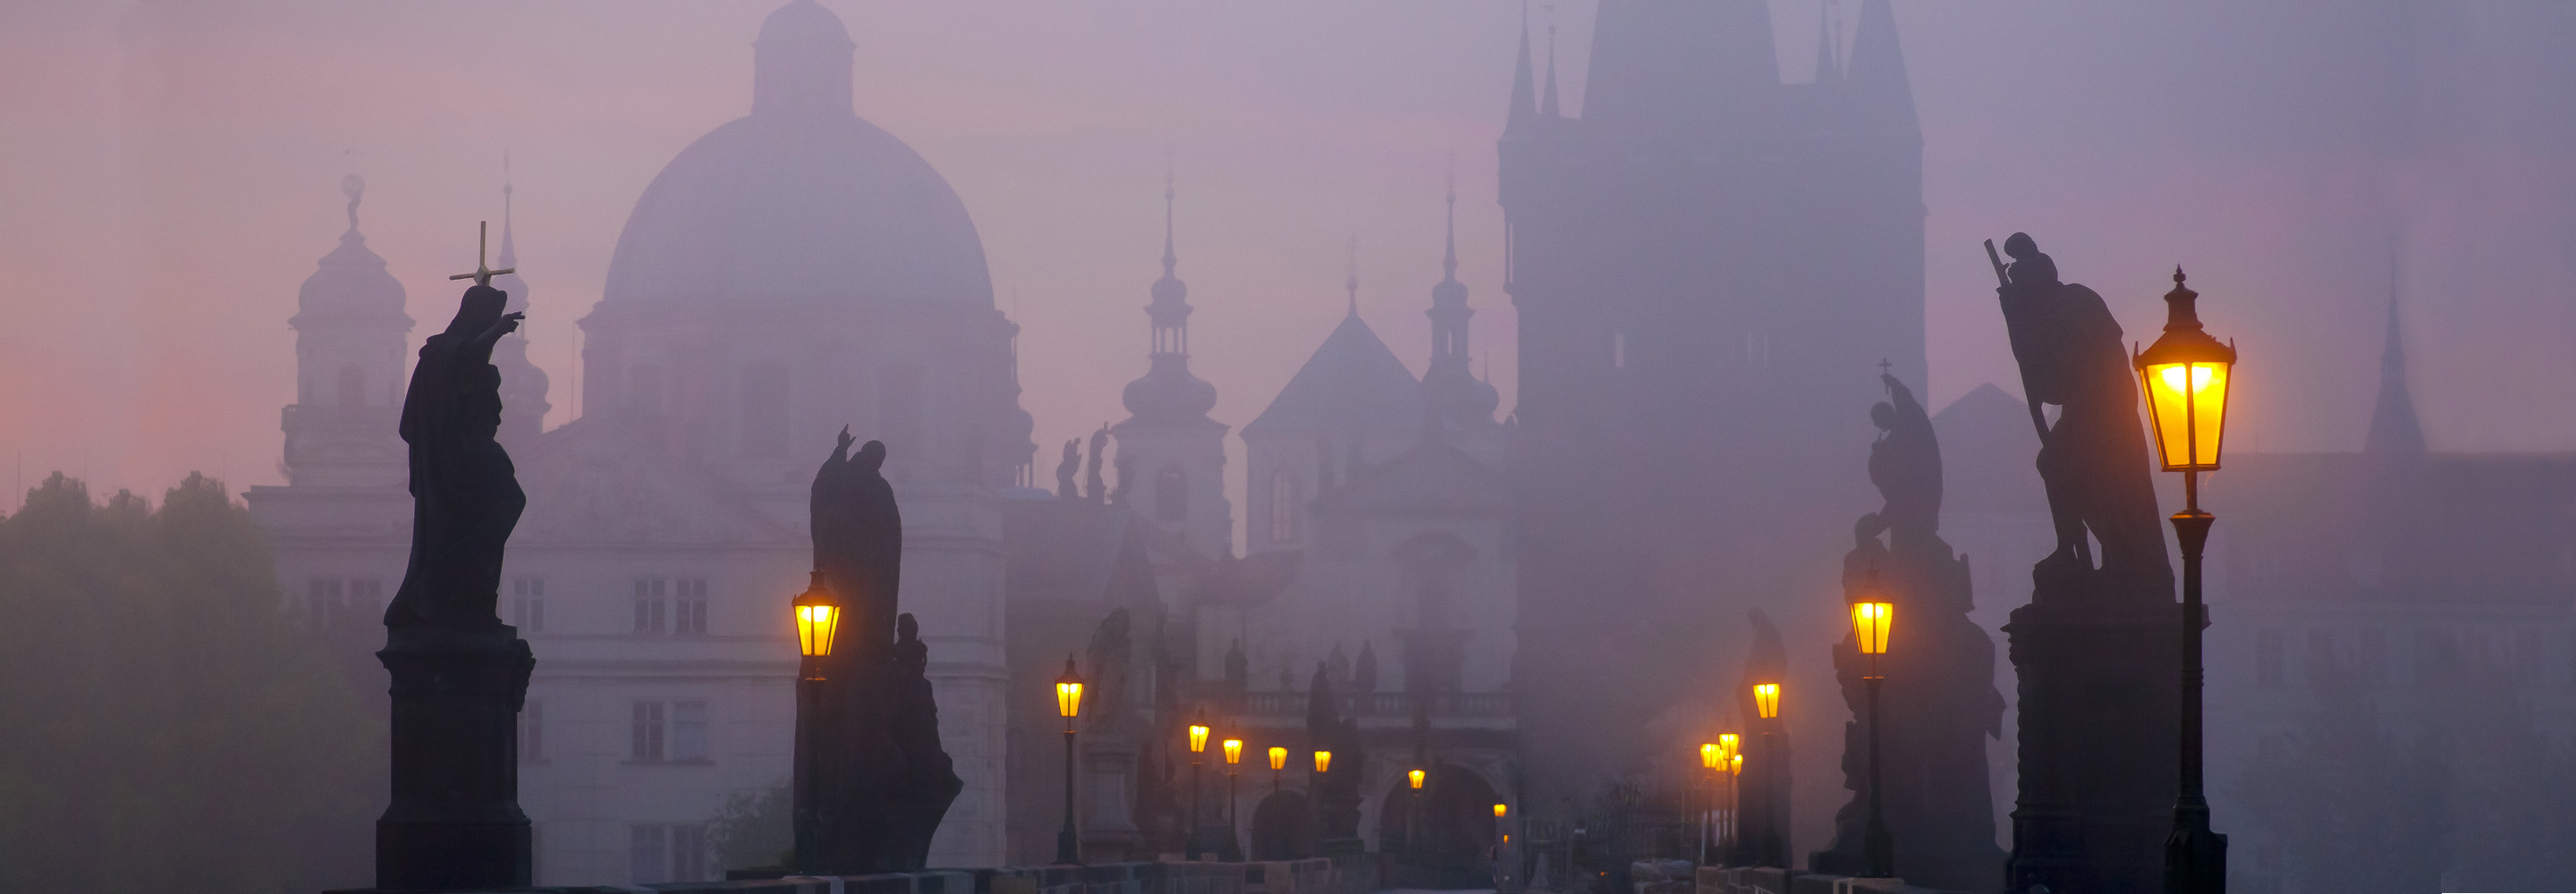 15 главных достопримечательностей Праги